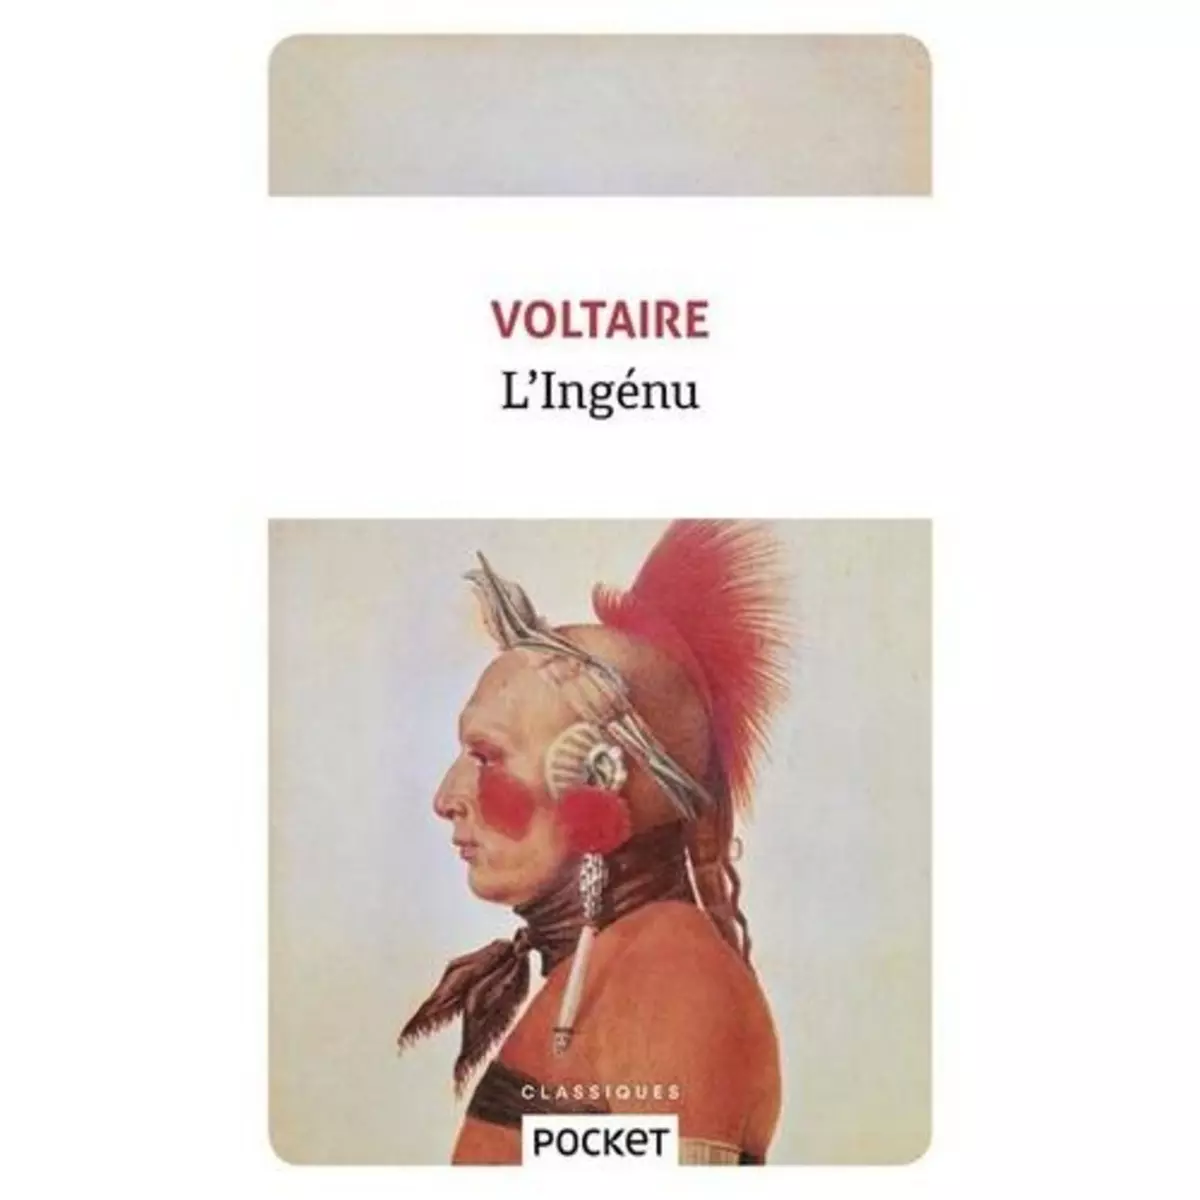  L'INGENU, Voltaire